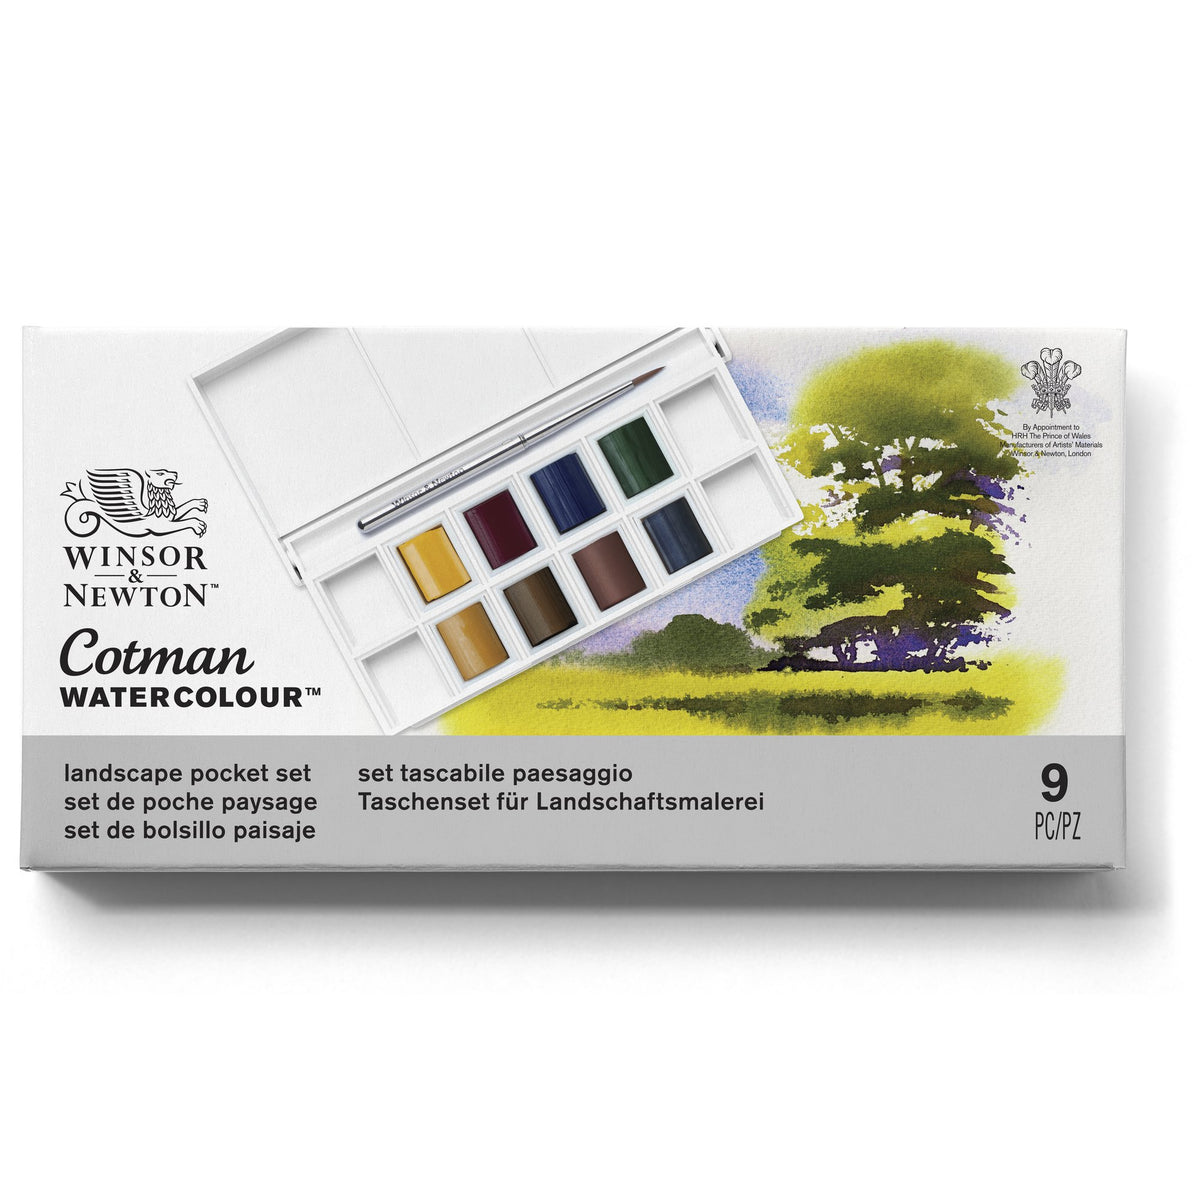 Winsor &amp; Newton Cotman Watercolour LANDSCAPE Pocket Set